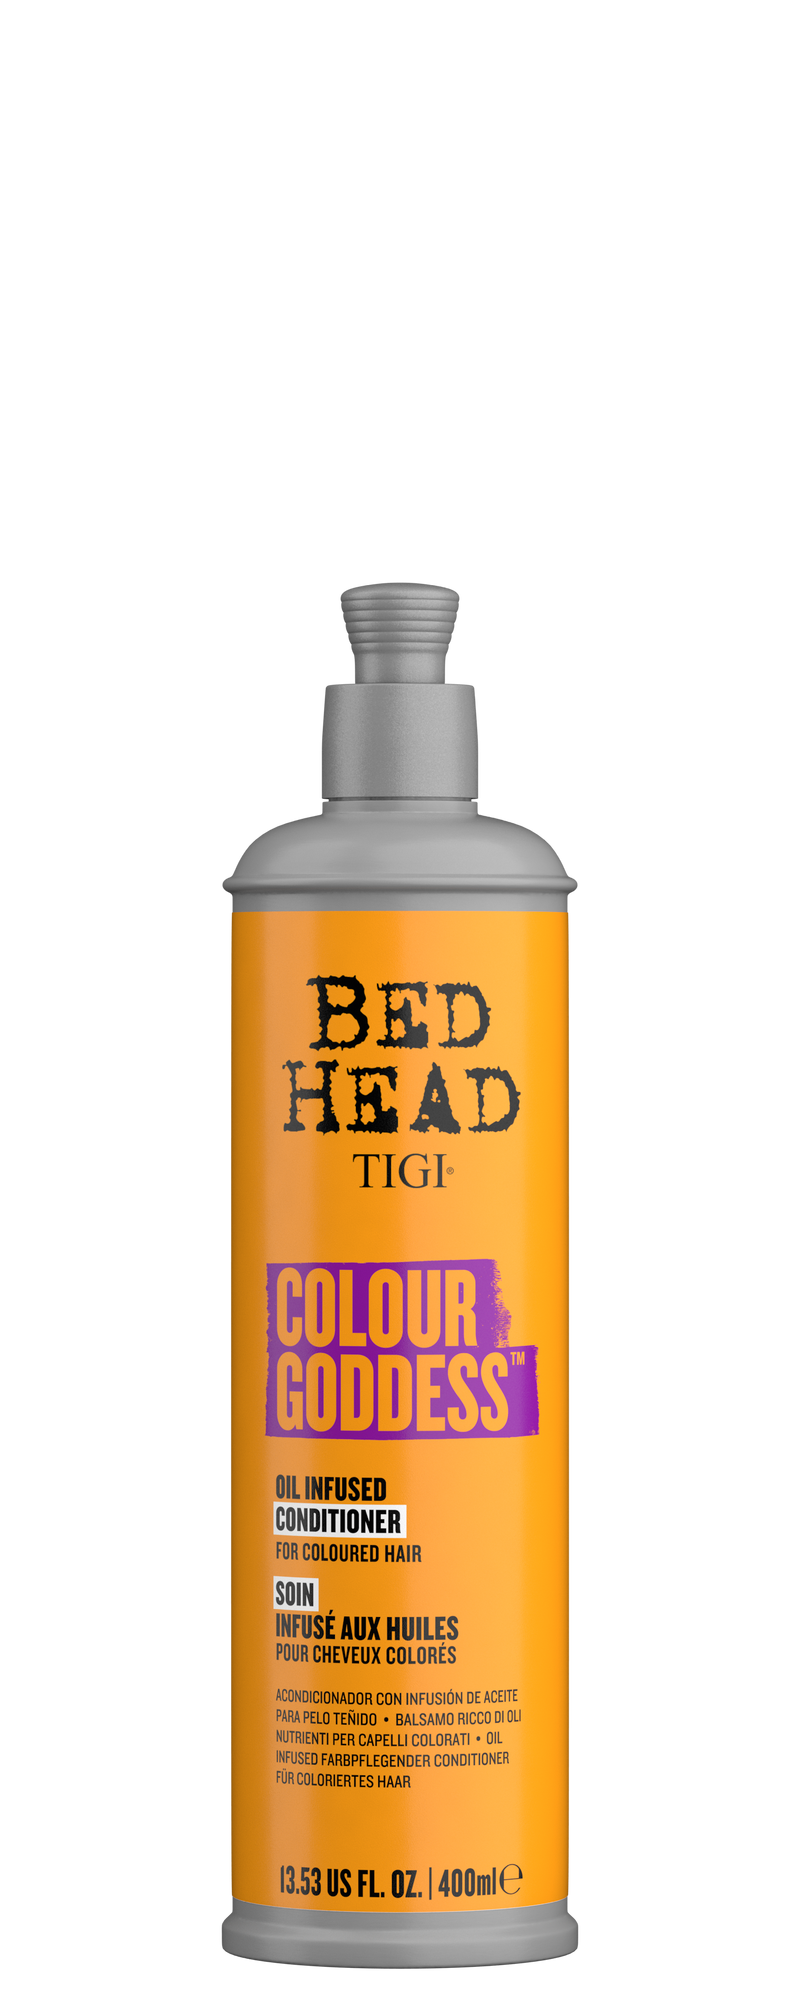 TIGI Conditioner for colored hair